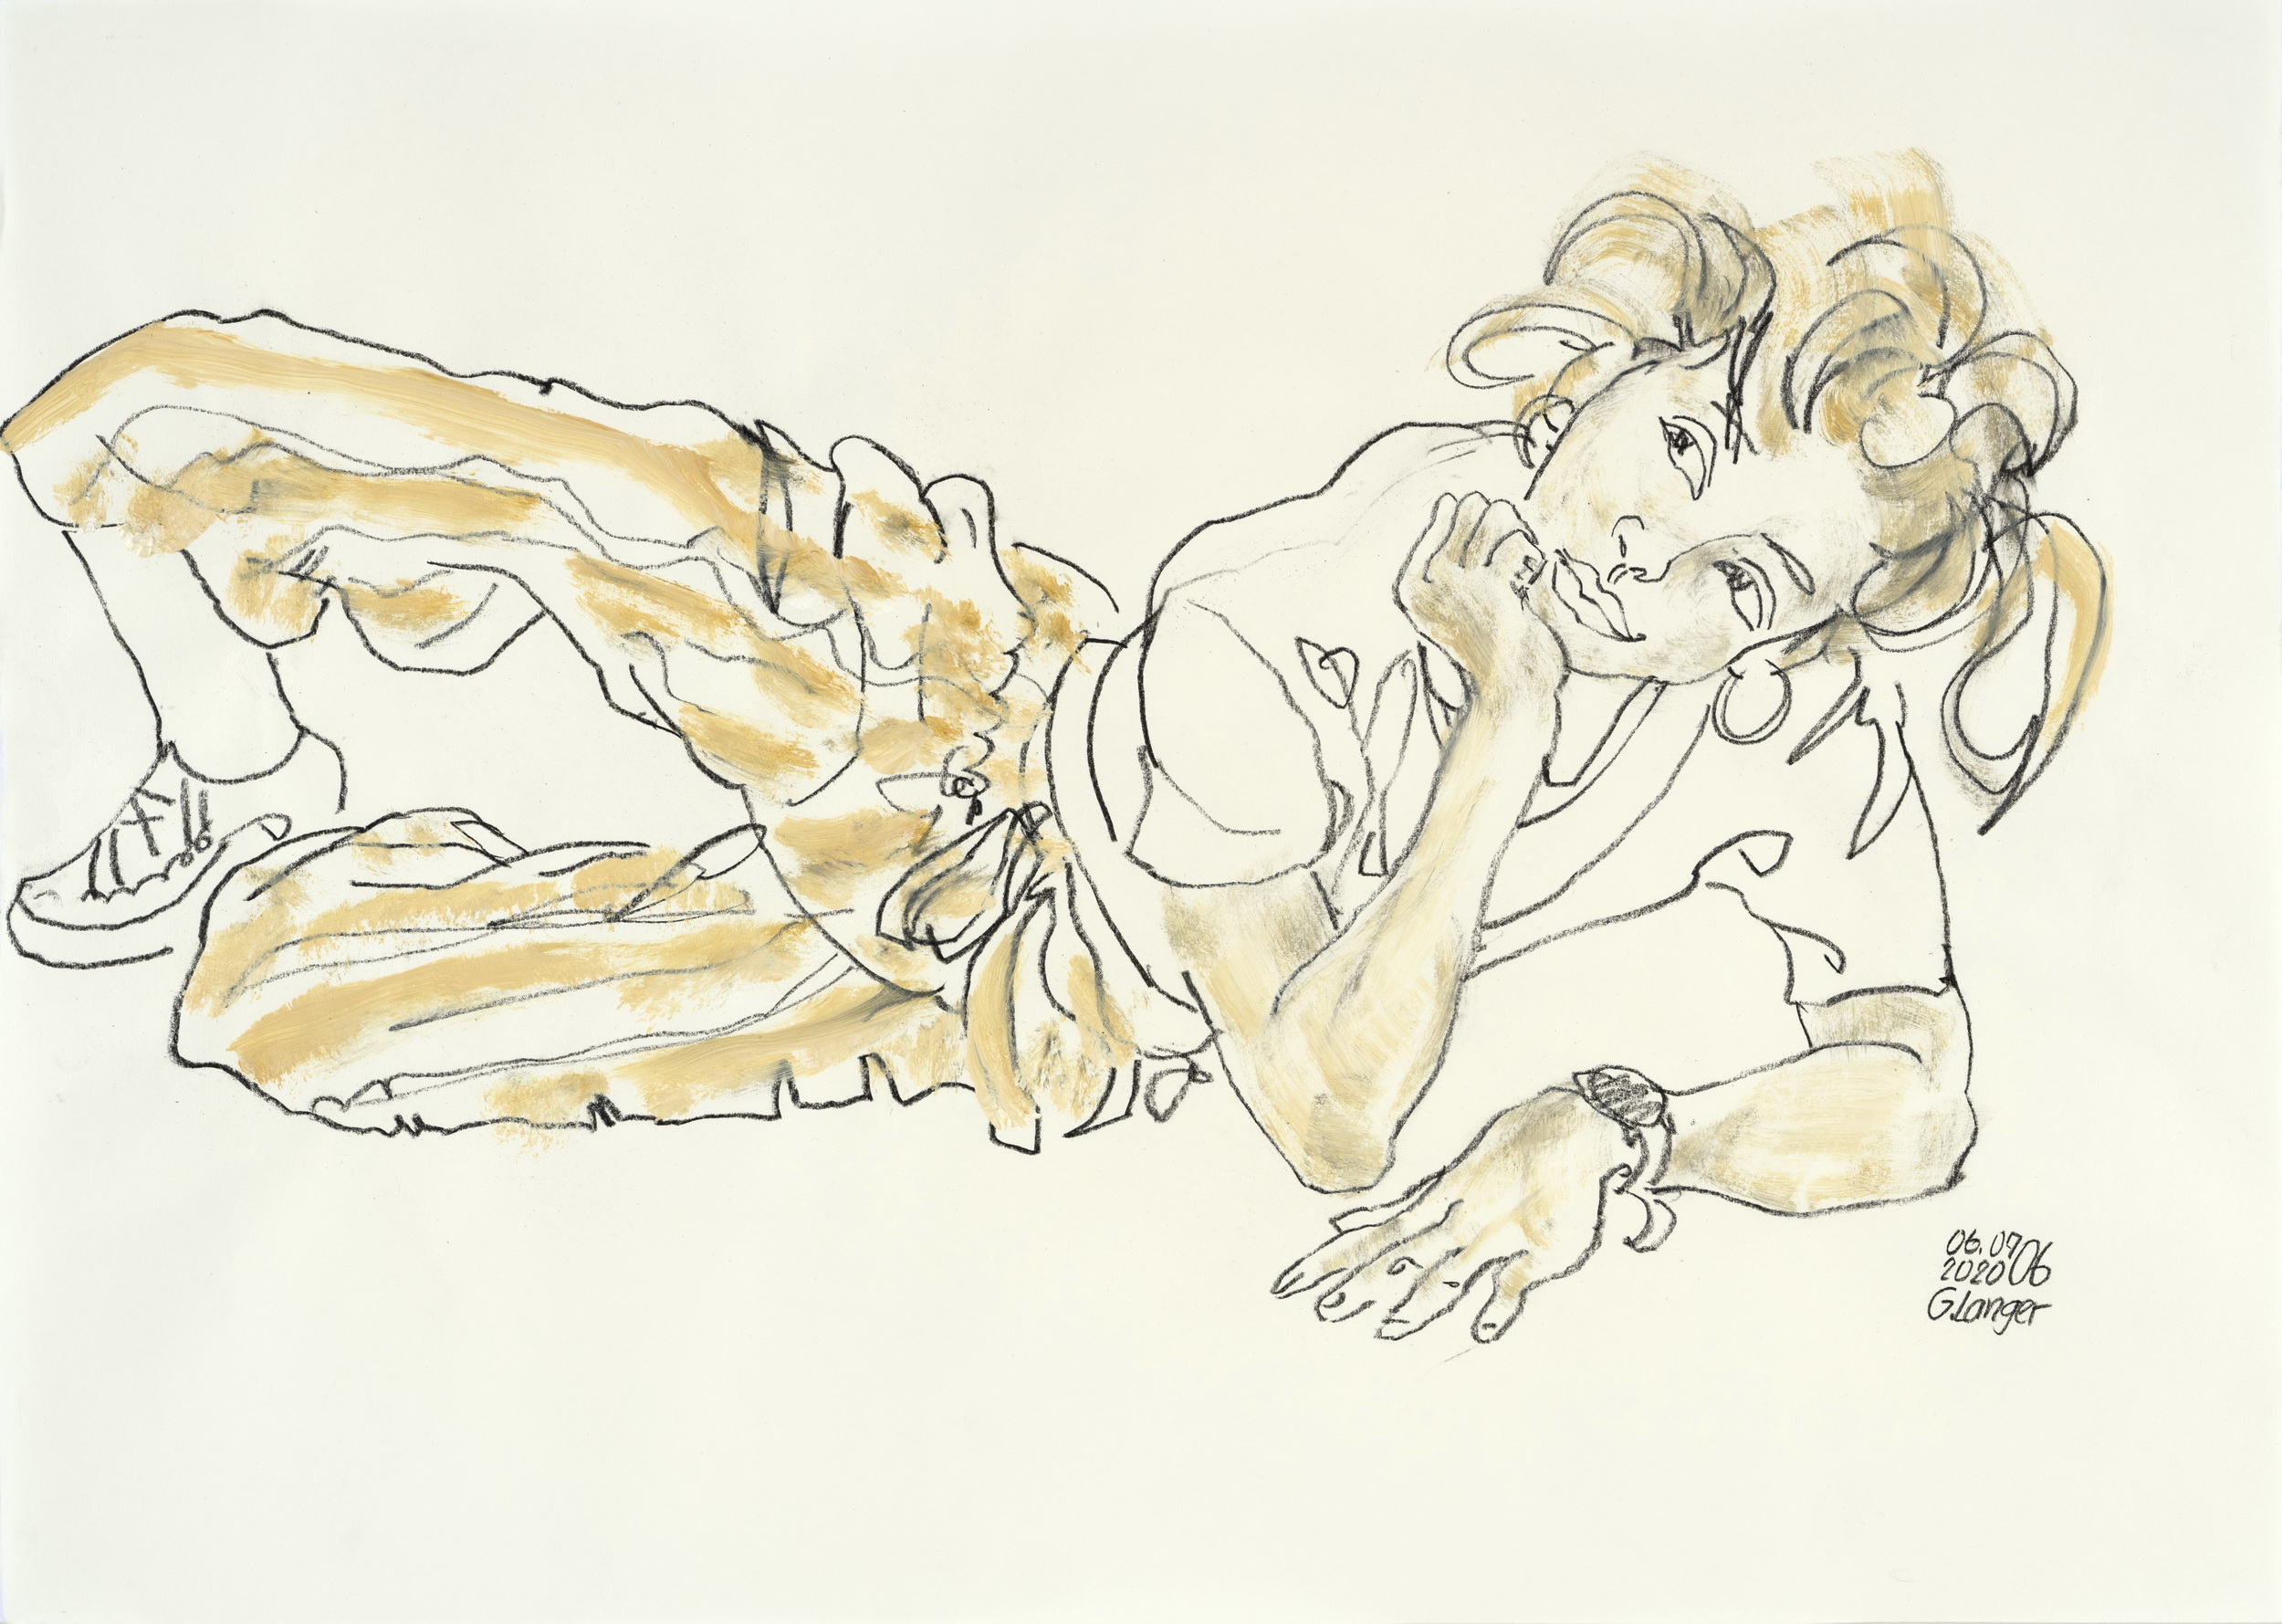 Gunter Langer, Liegendes Mädchen, Strahlend, 2020, Gouache Wasserfarbe Kohle, Zeichenpapier, 51 x 71 cm